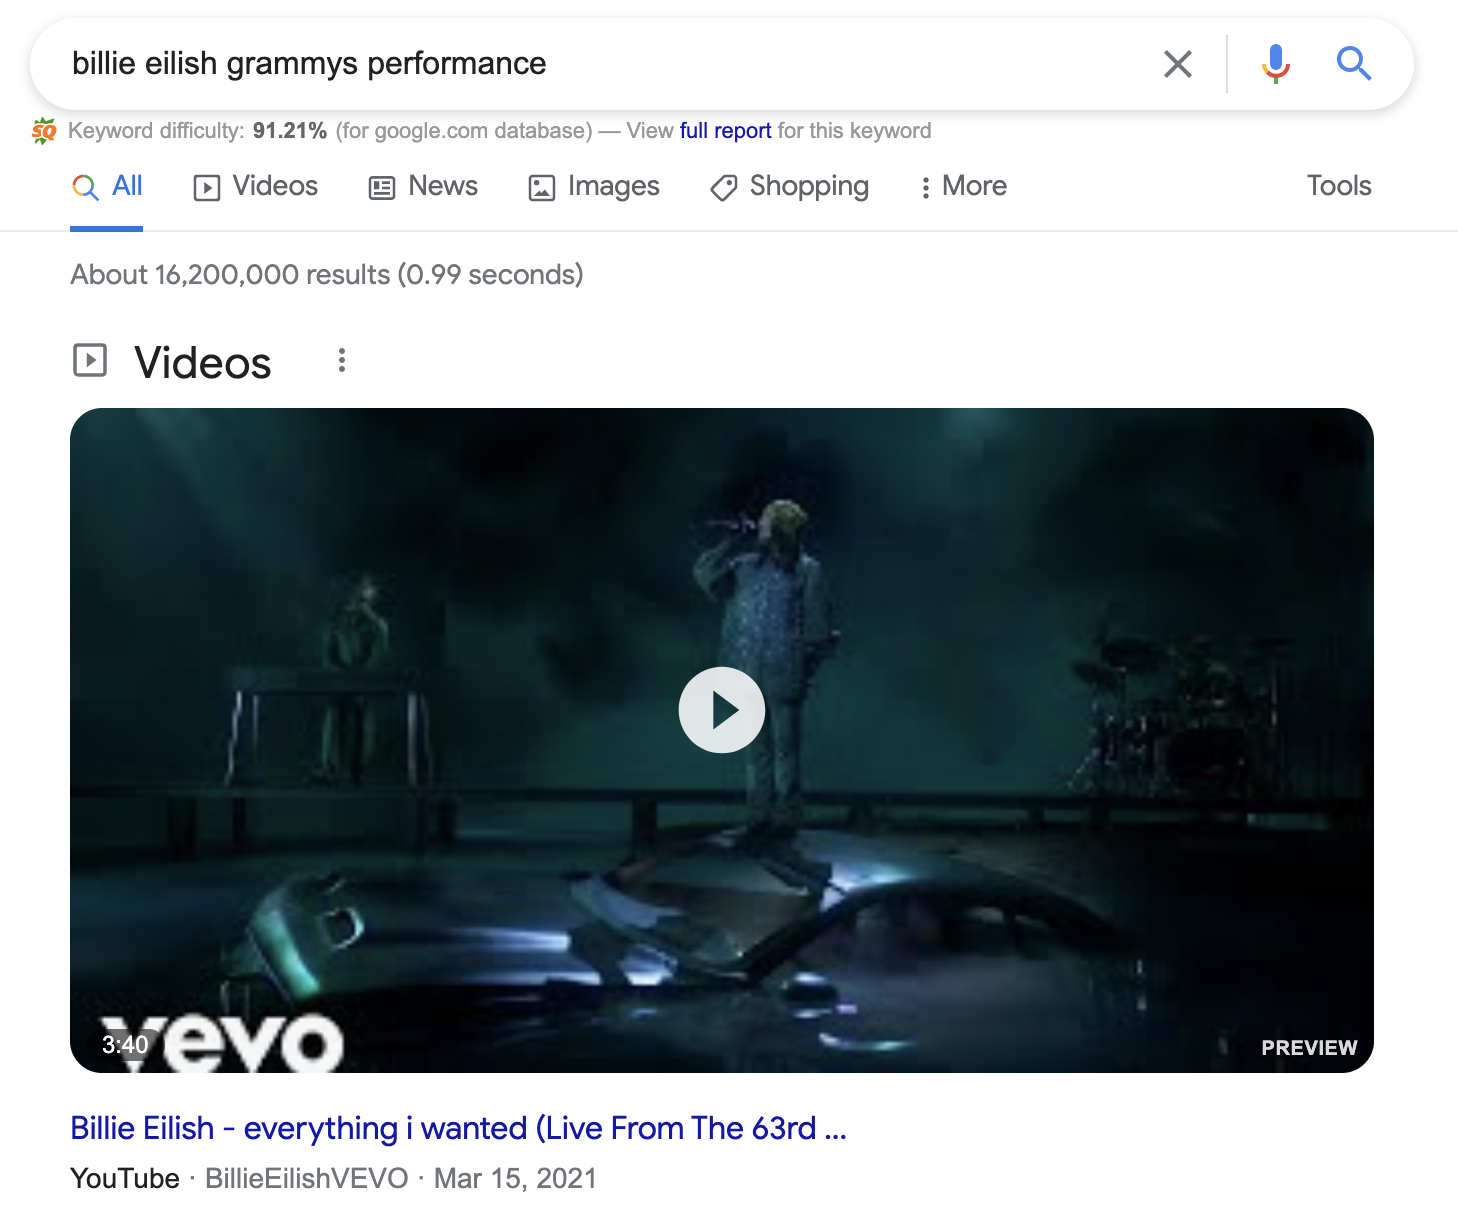 SEO d'images et balise Alt - Extrait enrichi de la vidéo de la performance de Billie Eillish aux Grammy Awards